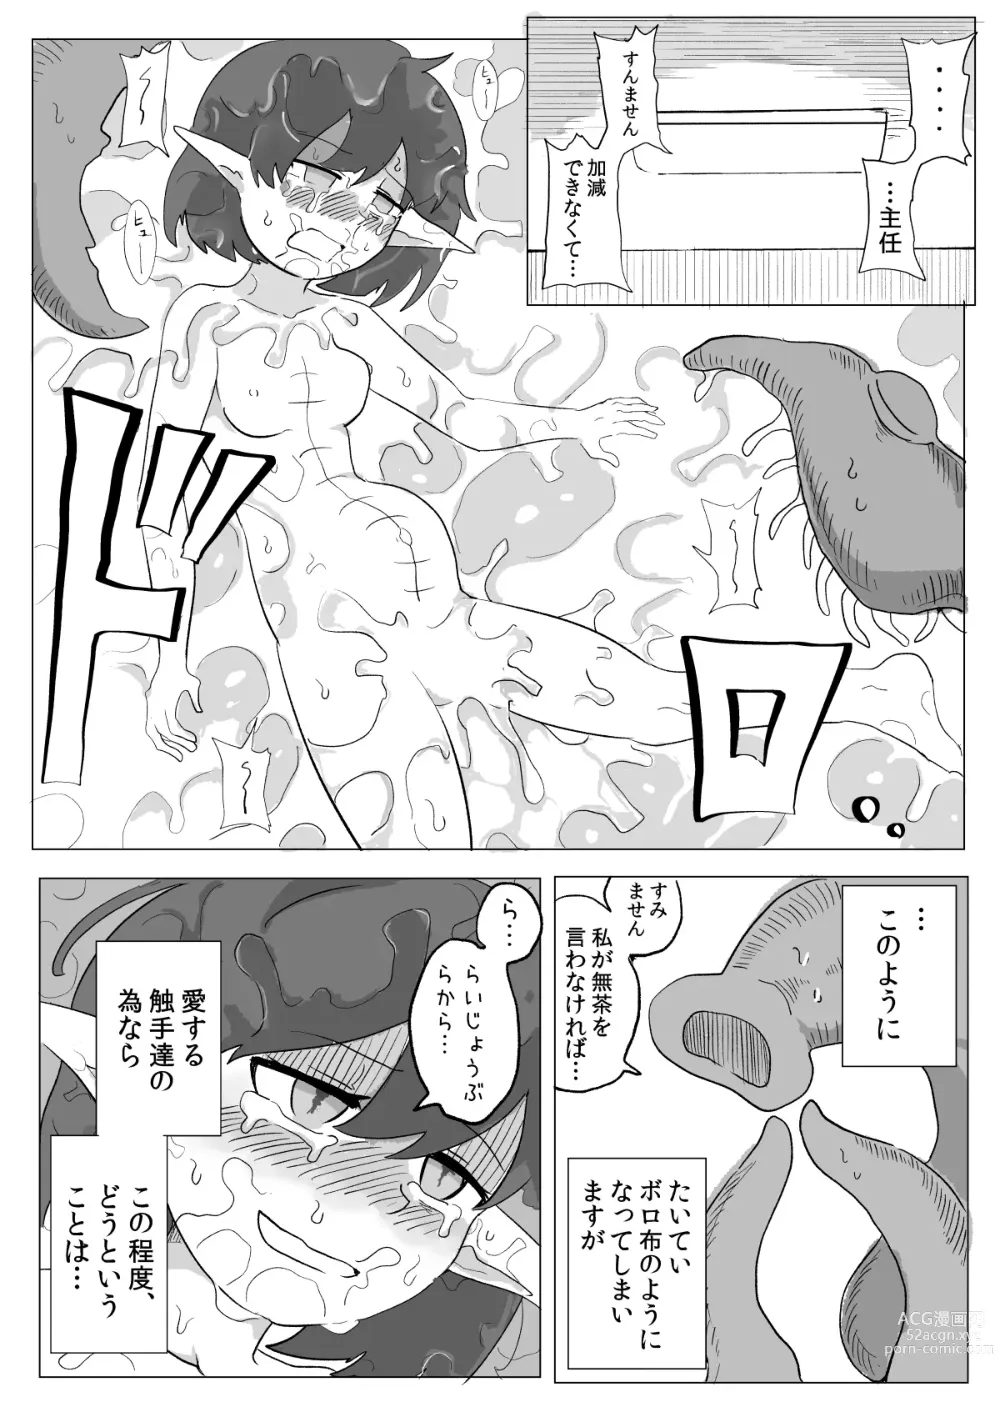 Page 36 of doujinshi Watashi to Shokushu no Kyuuryoubi